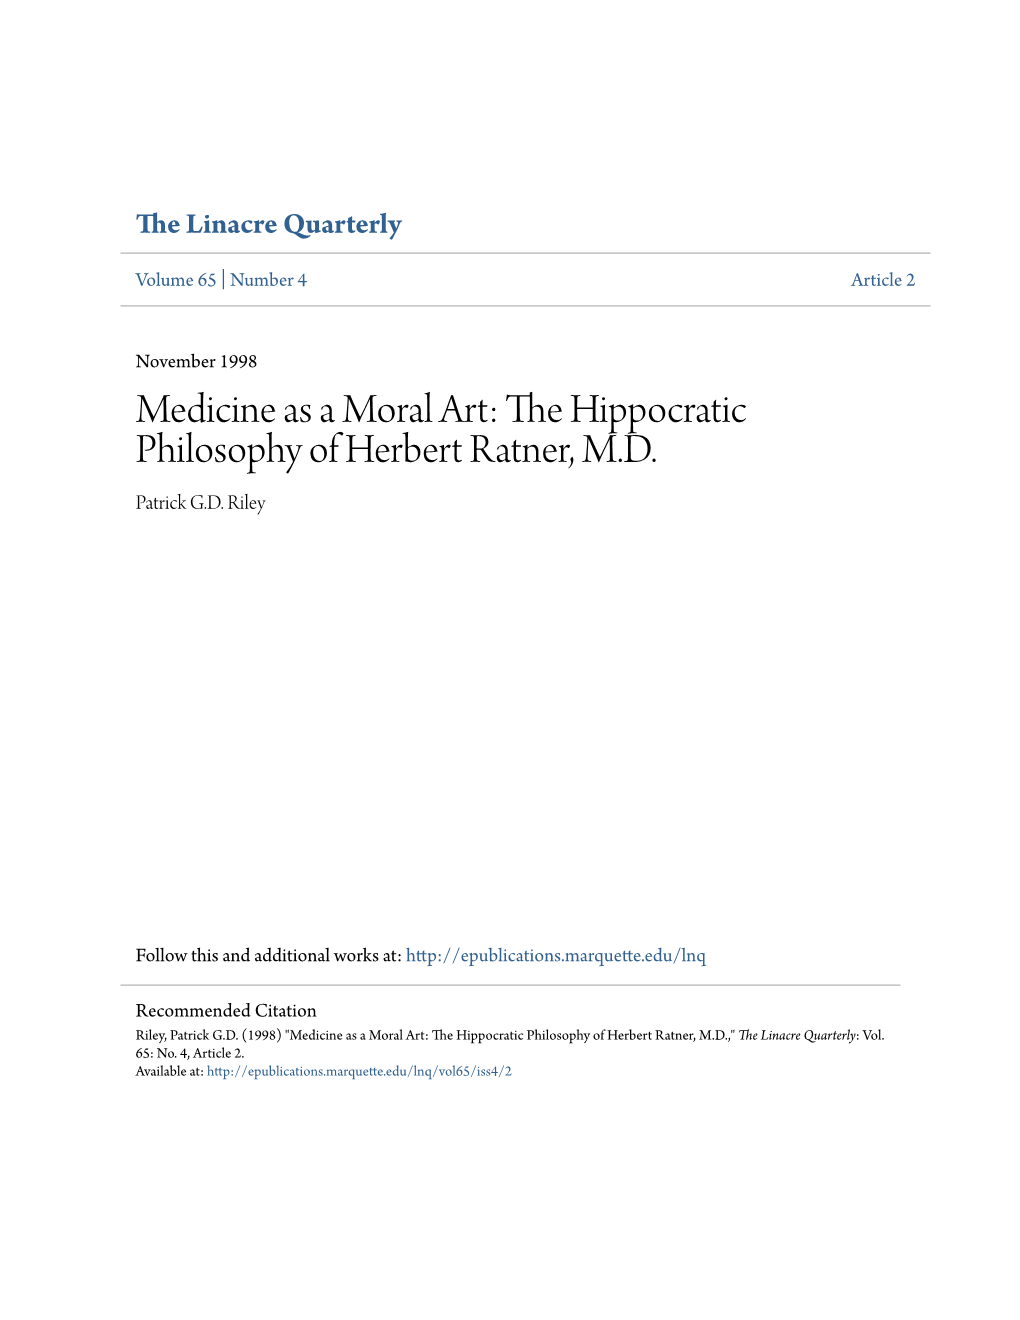 The Hippocratic Philosophy of Herbert Ratner, MD